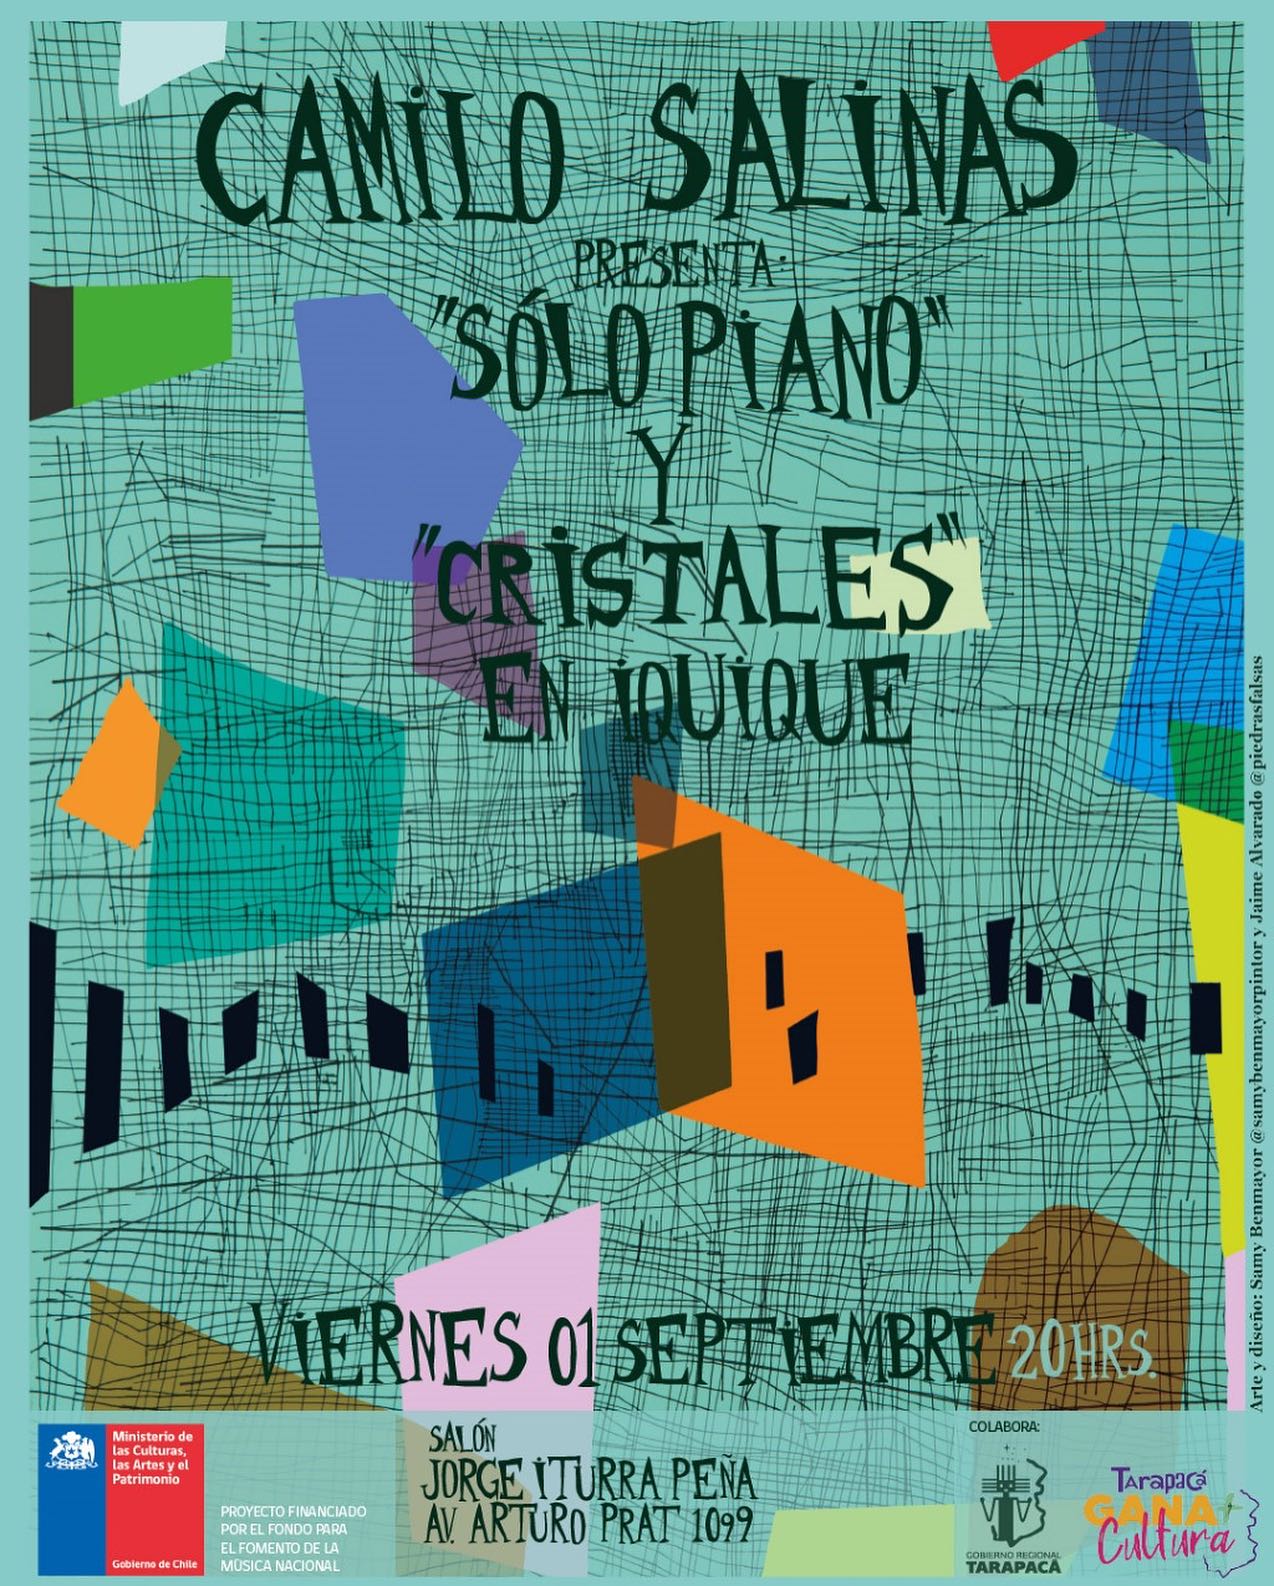 Camilo Salinas Solo Piano y Cristales